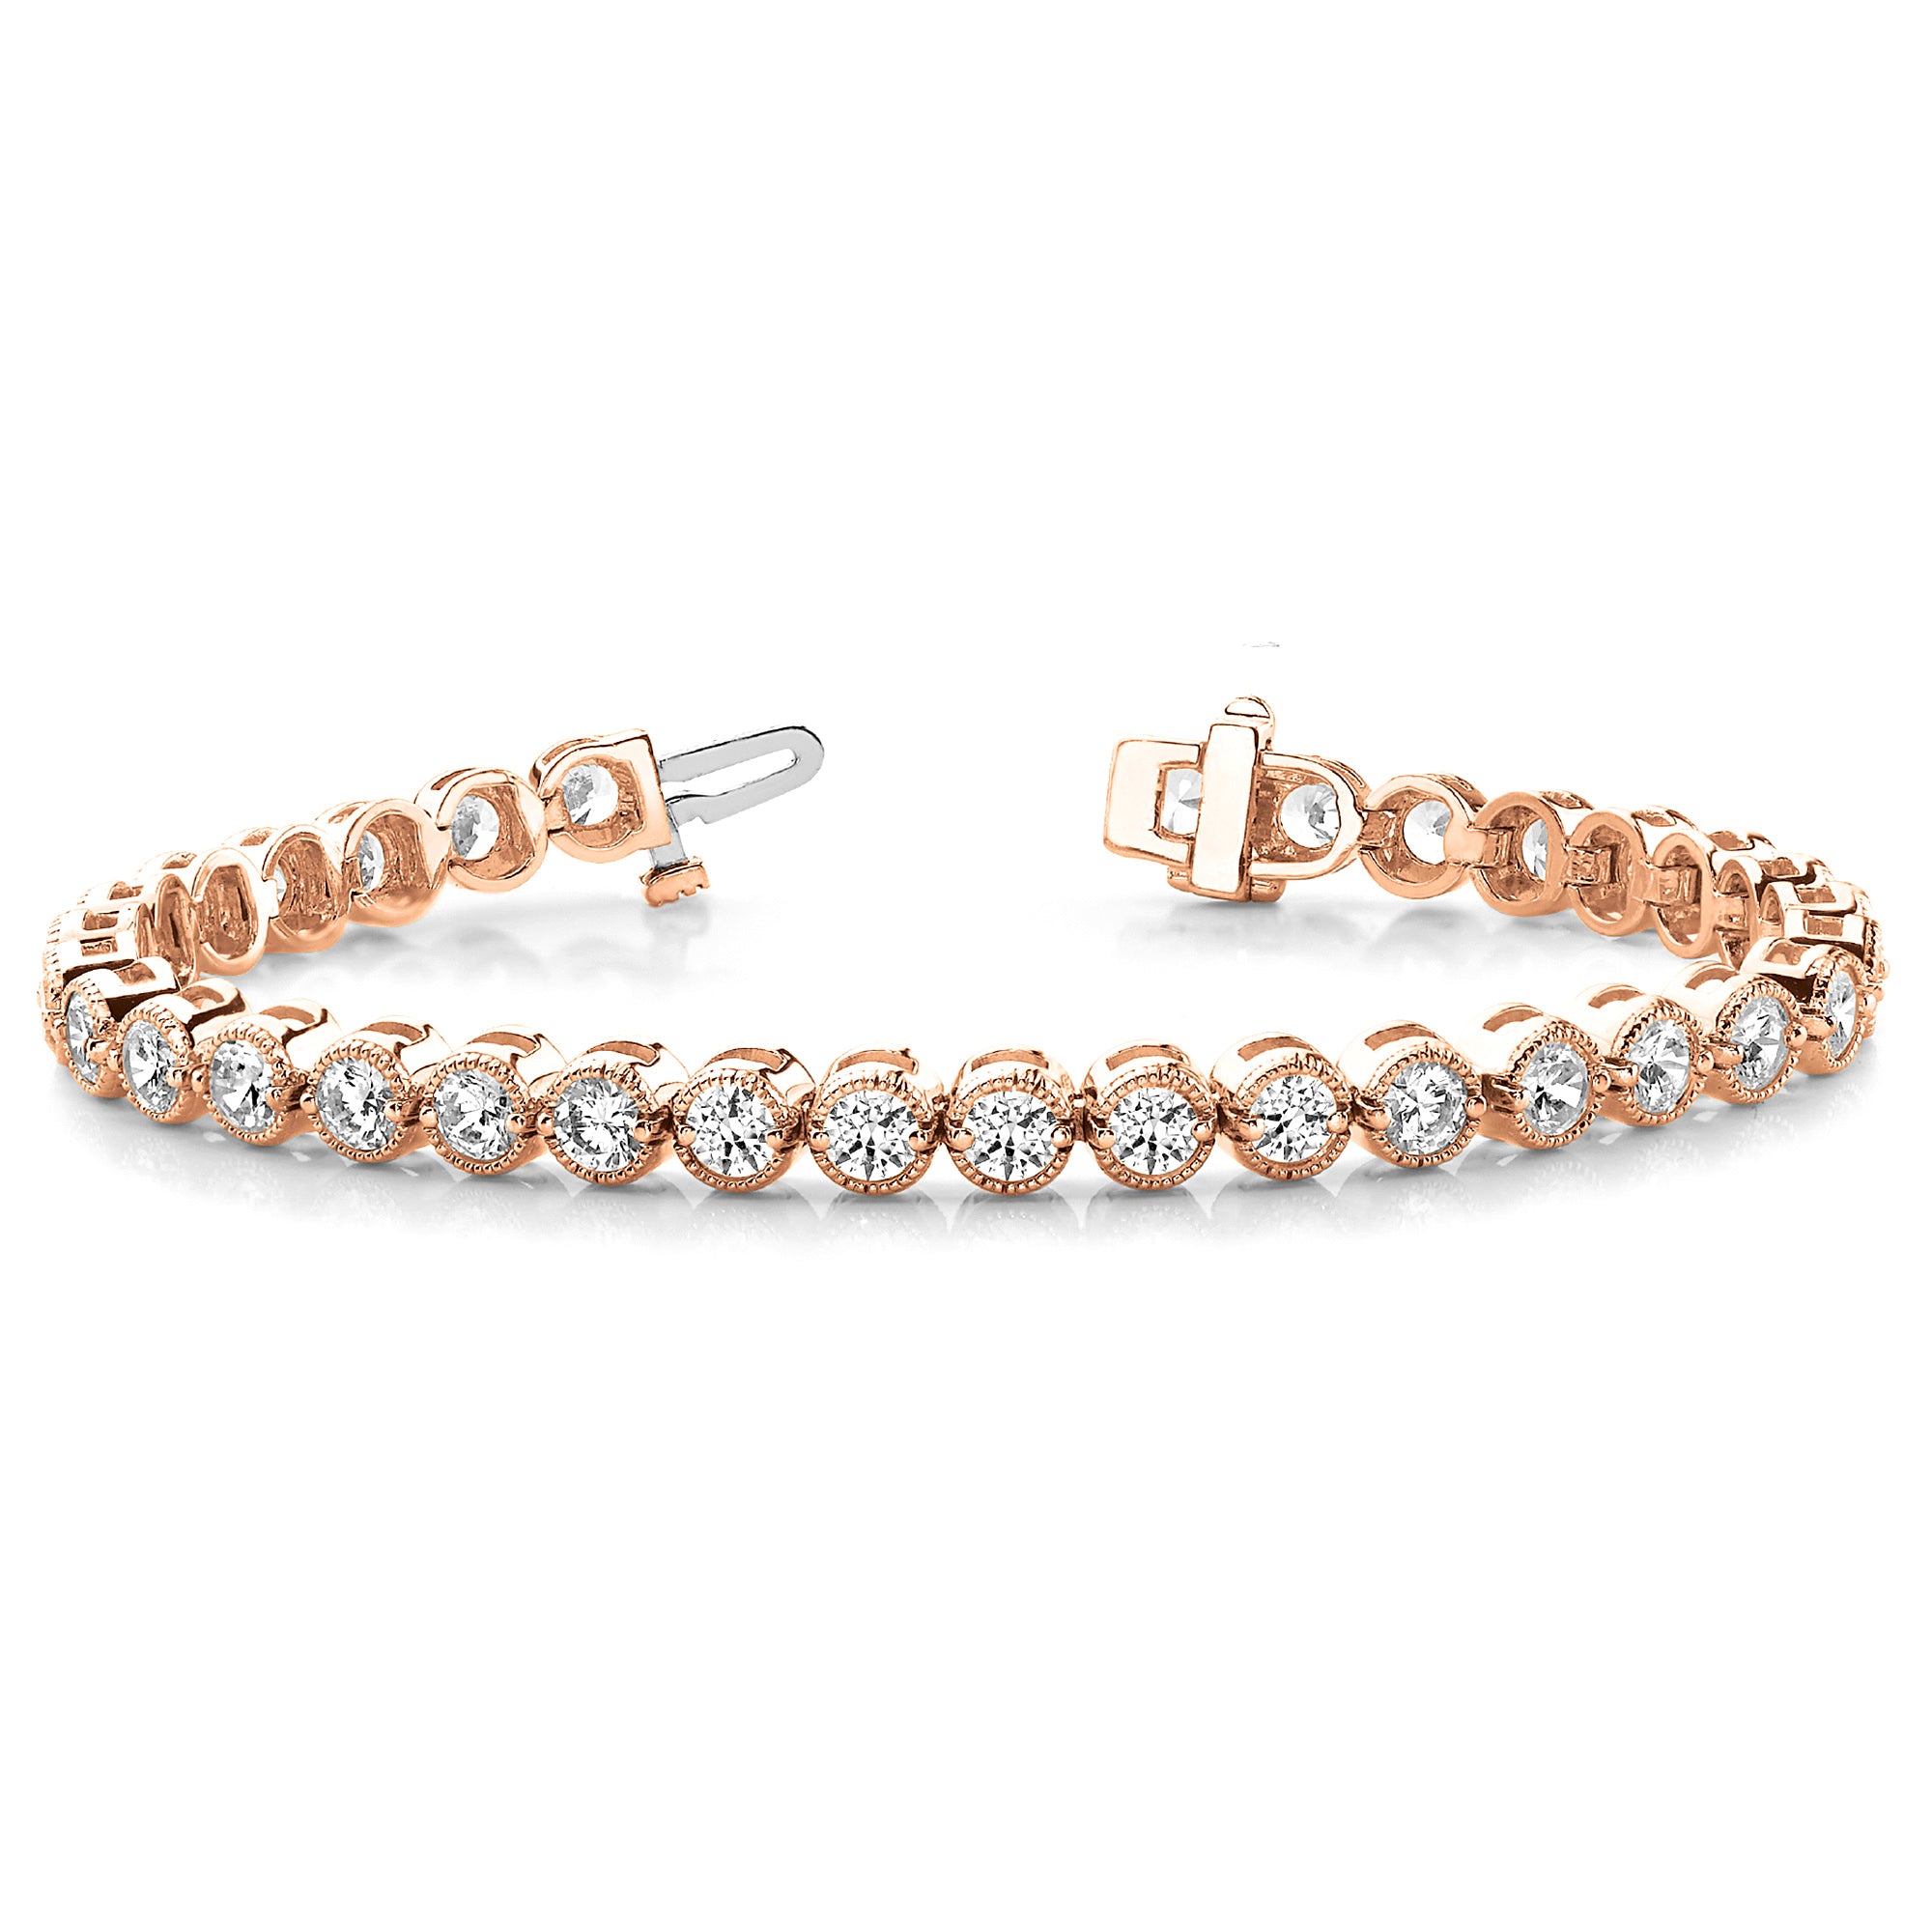 Milgrain Bezel Set 5.75 ctw Round Diamond Tennis Bracelet-in 14K/18K White, Yellow, Rose Gold and Platinum - Christmas Jewelry Gift -VIRABYANI